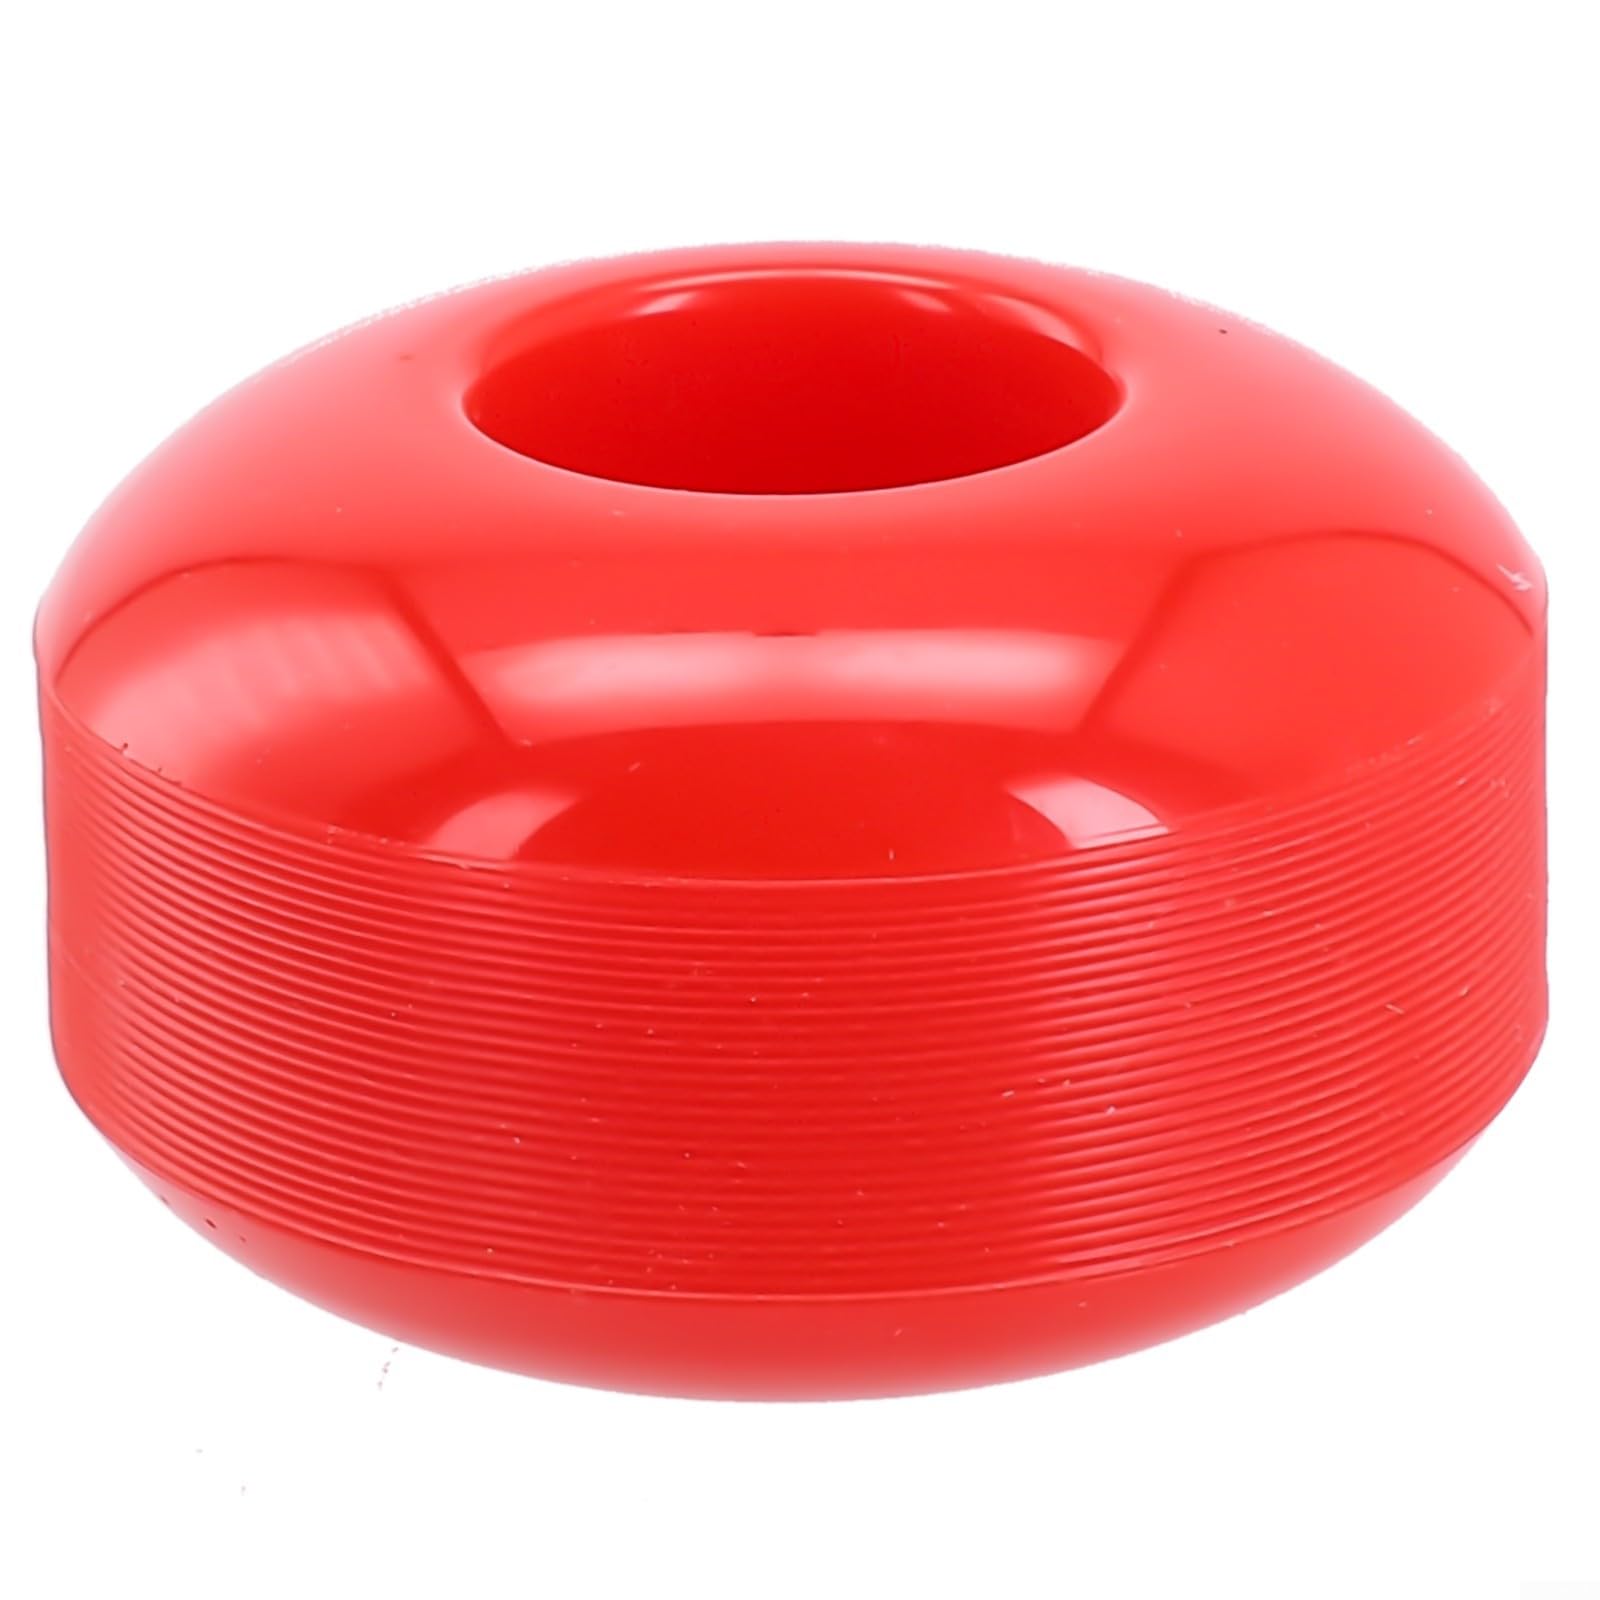 Zuverlässige Skateboard-Räder, Longboard-Rad, 52 mm, 95 A, PU-Material und ideal für Tricks (rot) von QOXEZY